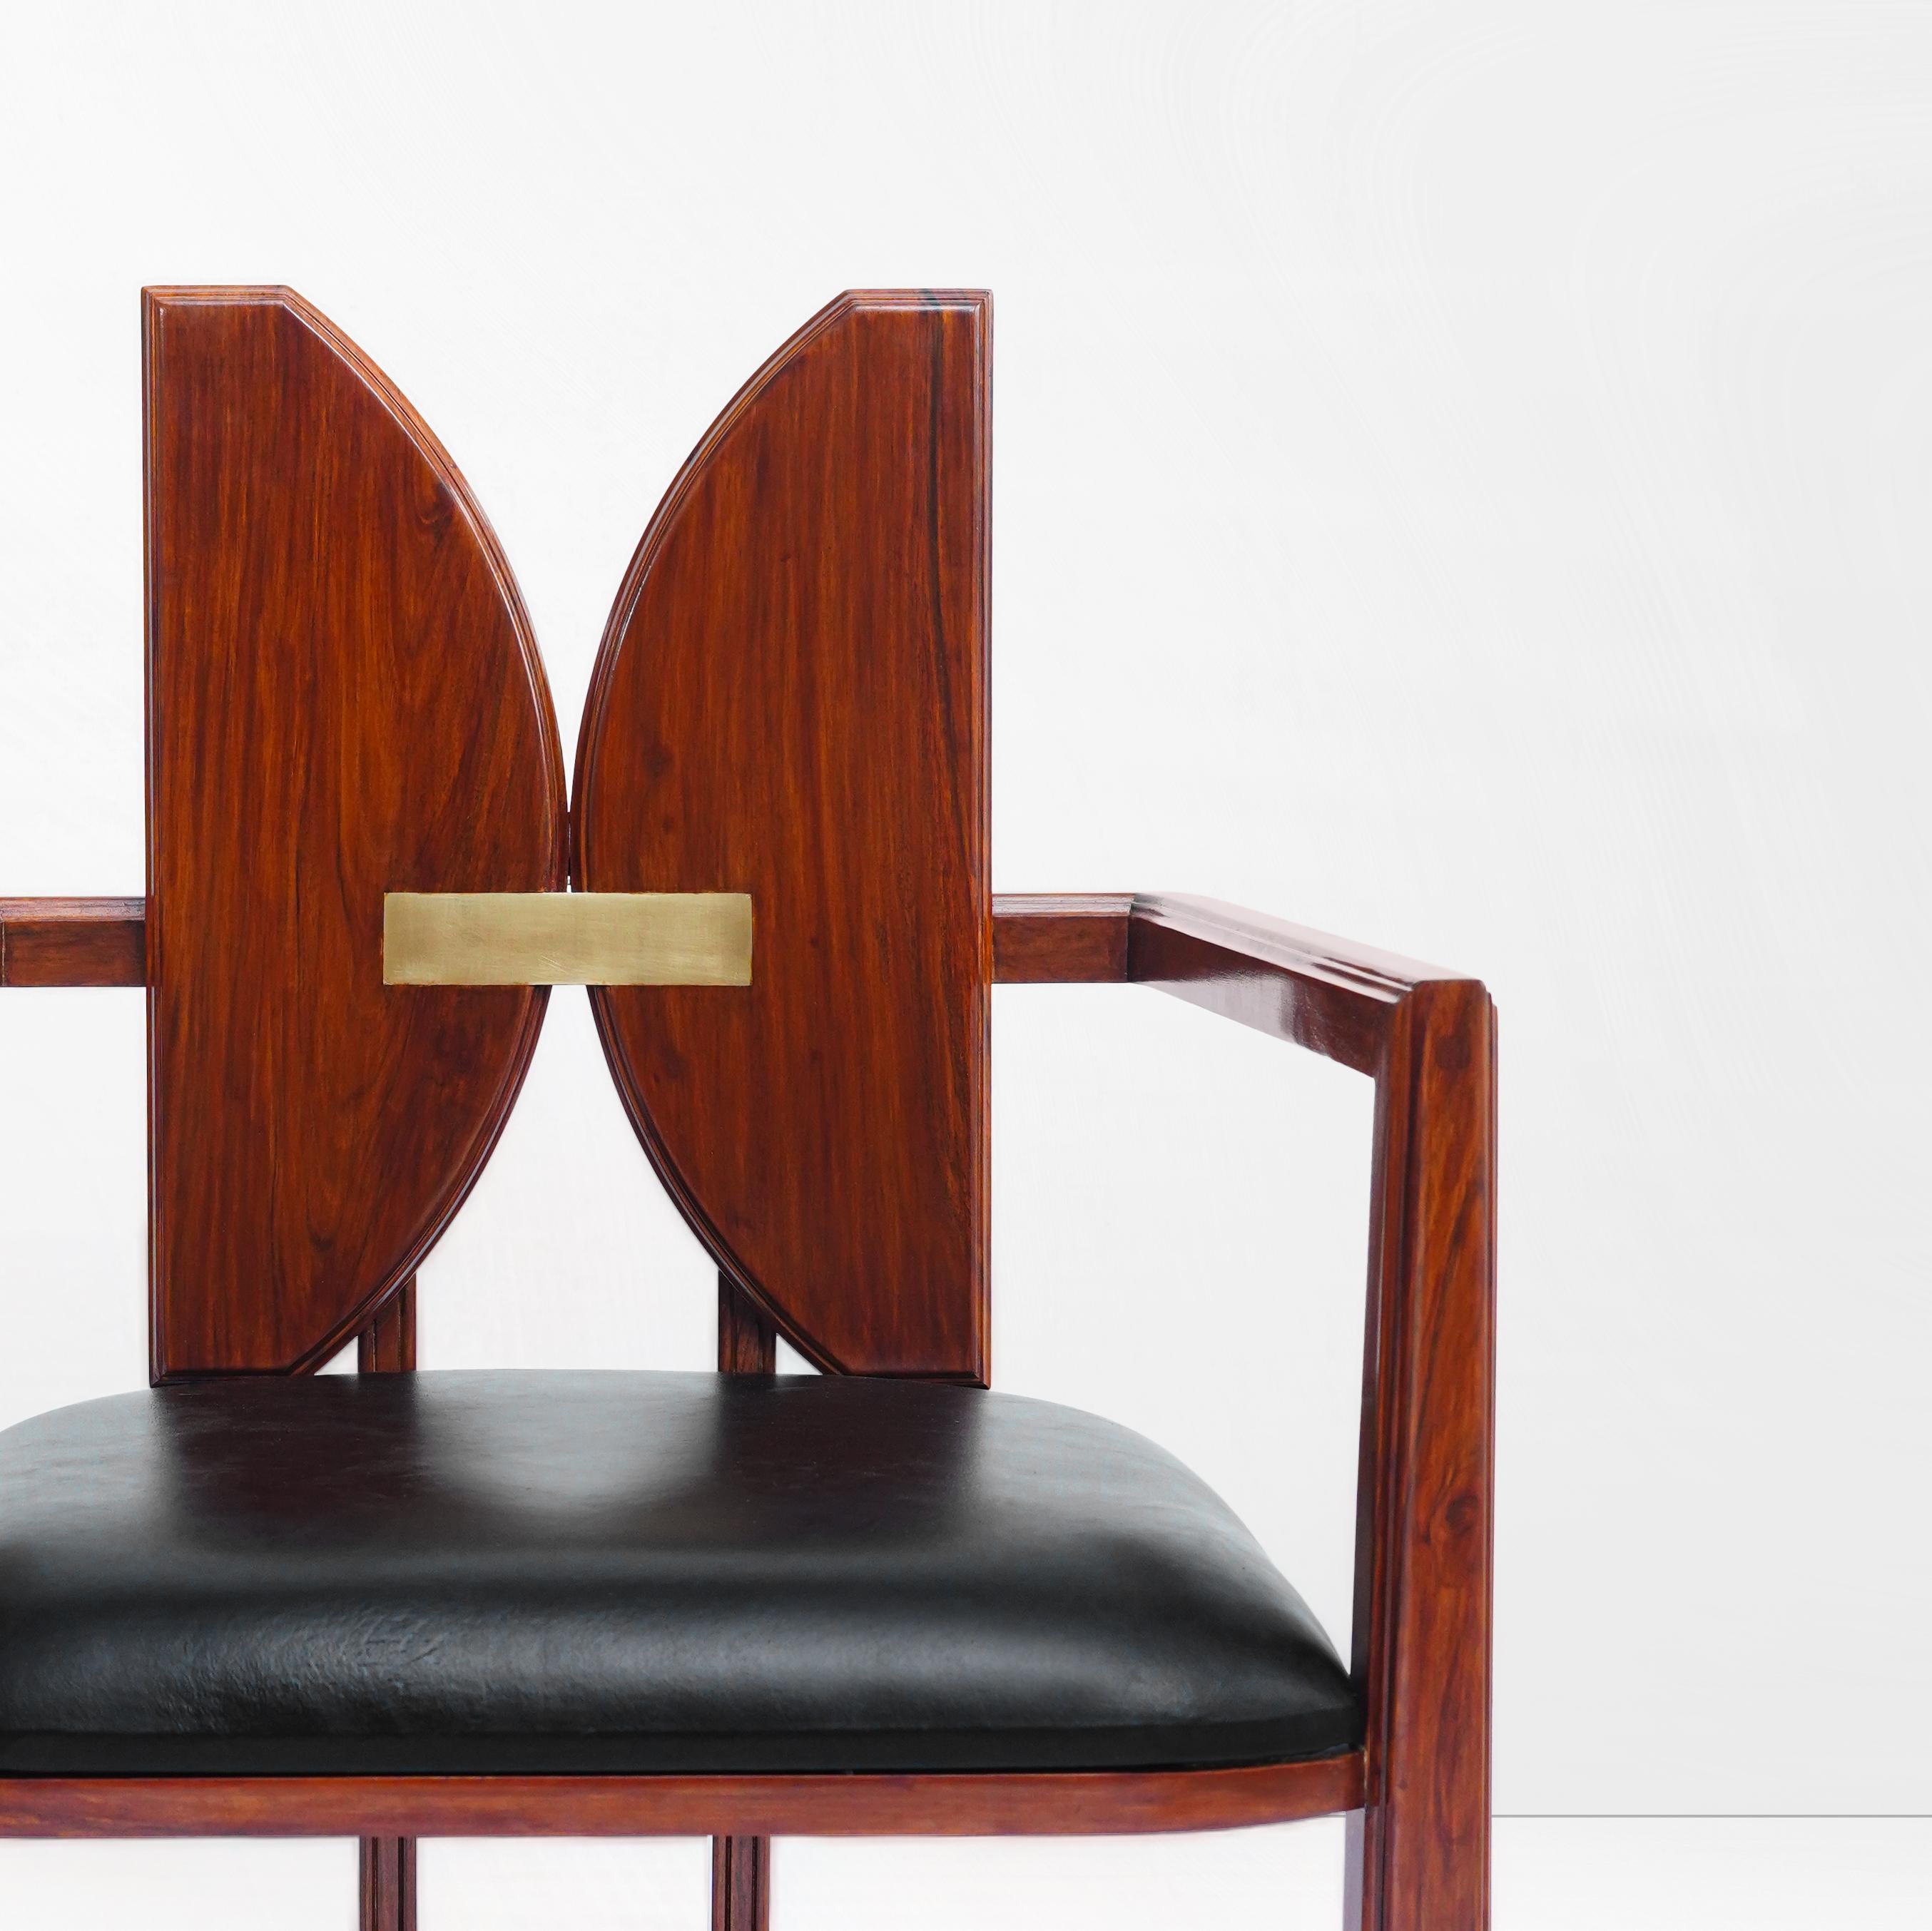 Lernen Sie den Icarus Stuhl kennen: Erhöhen Sie Ihren Raum mit unverwechselbarer Eleganz

Wir stellen den Icarus Chair vor, ein atemberaubendes und unverwechselbares Meisterwerk, das jeden Raum mühelos aufwertet. Dieser moderne Esszimmerstuhl ist